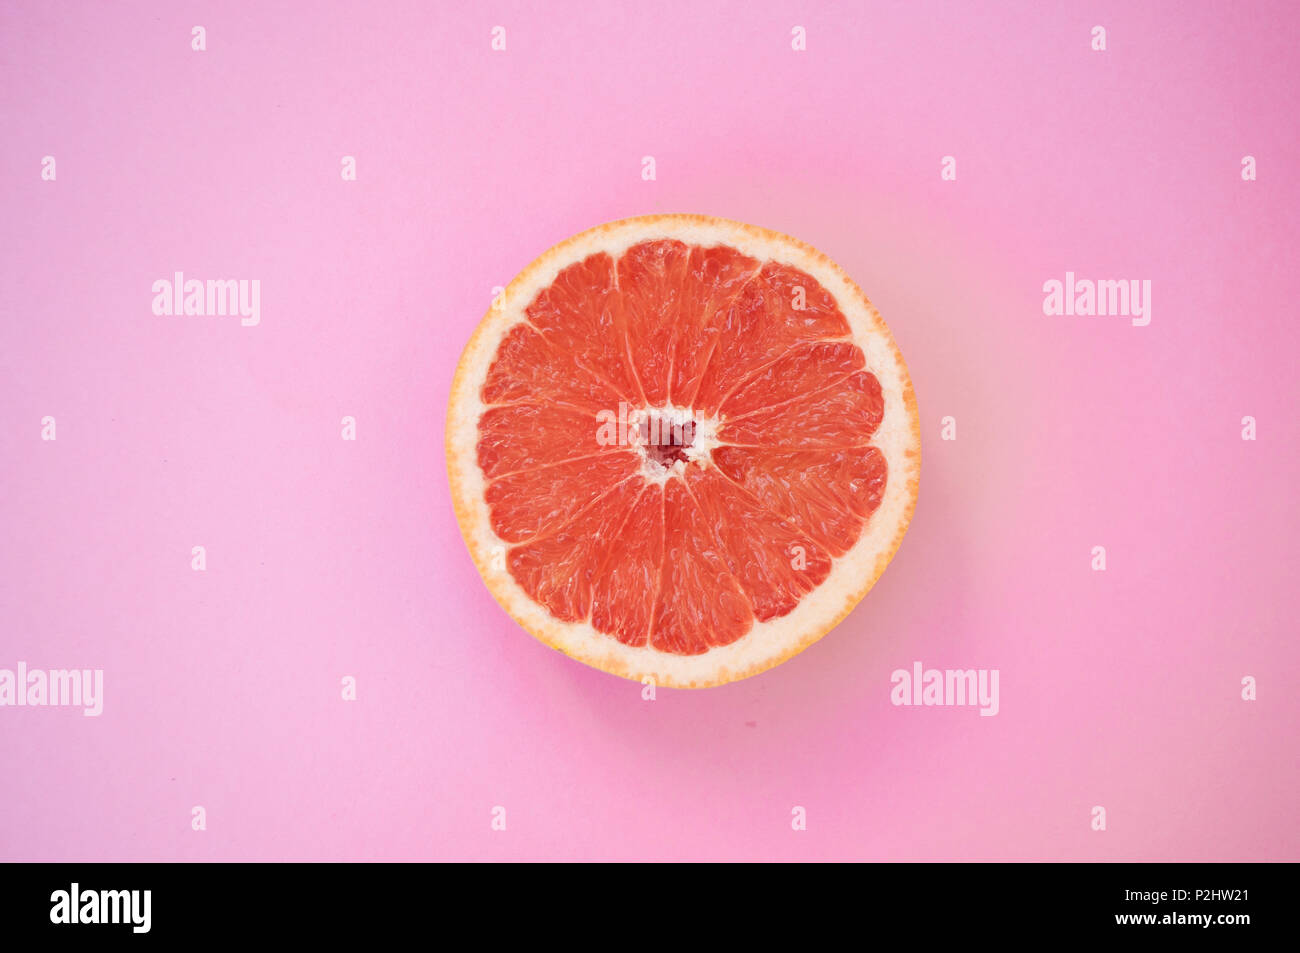 Schön saftig geschnitten Grapefruit auf Pastell rosa Hintergrund. Stockfoto